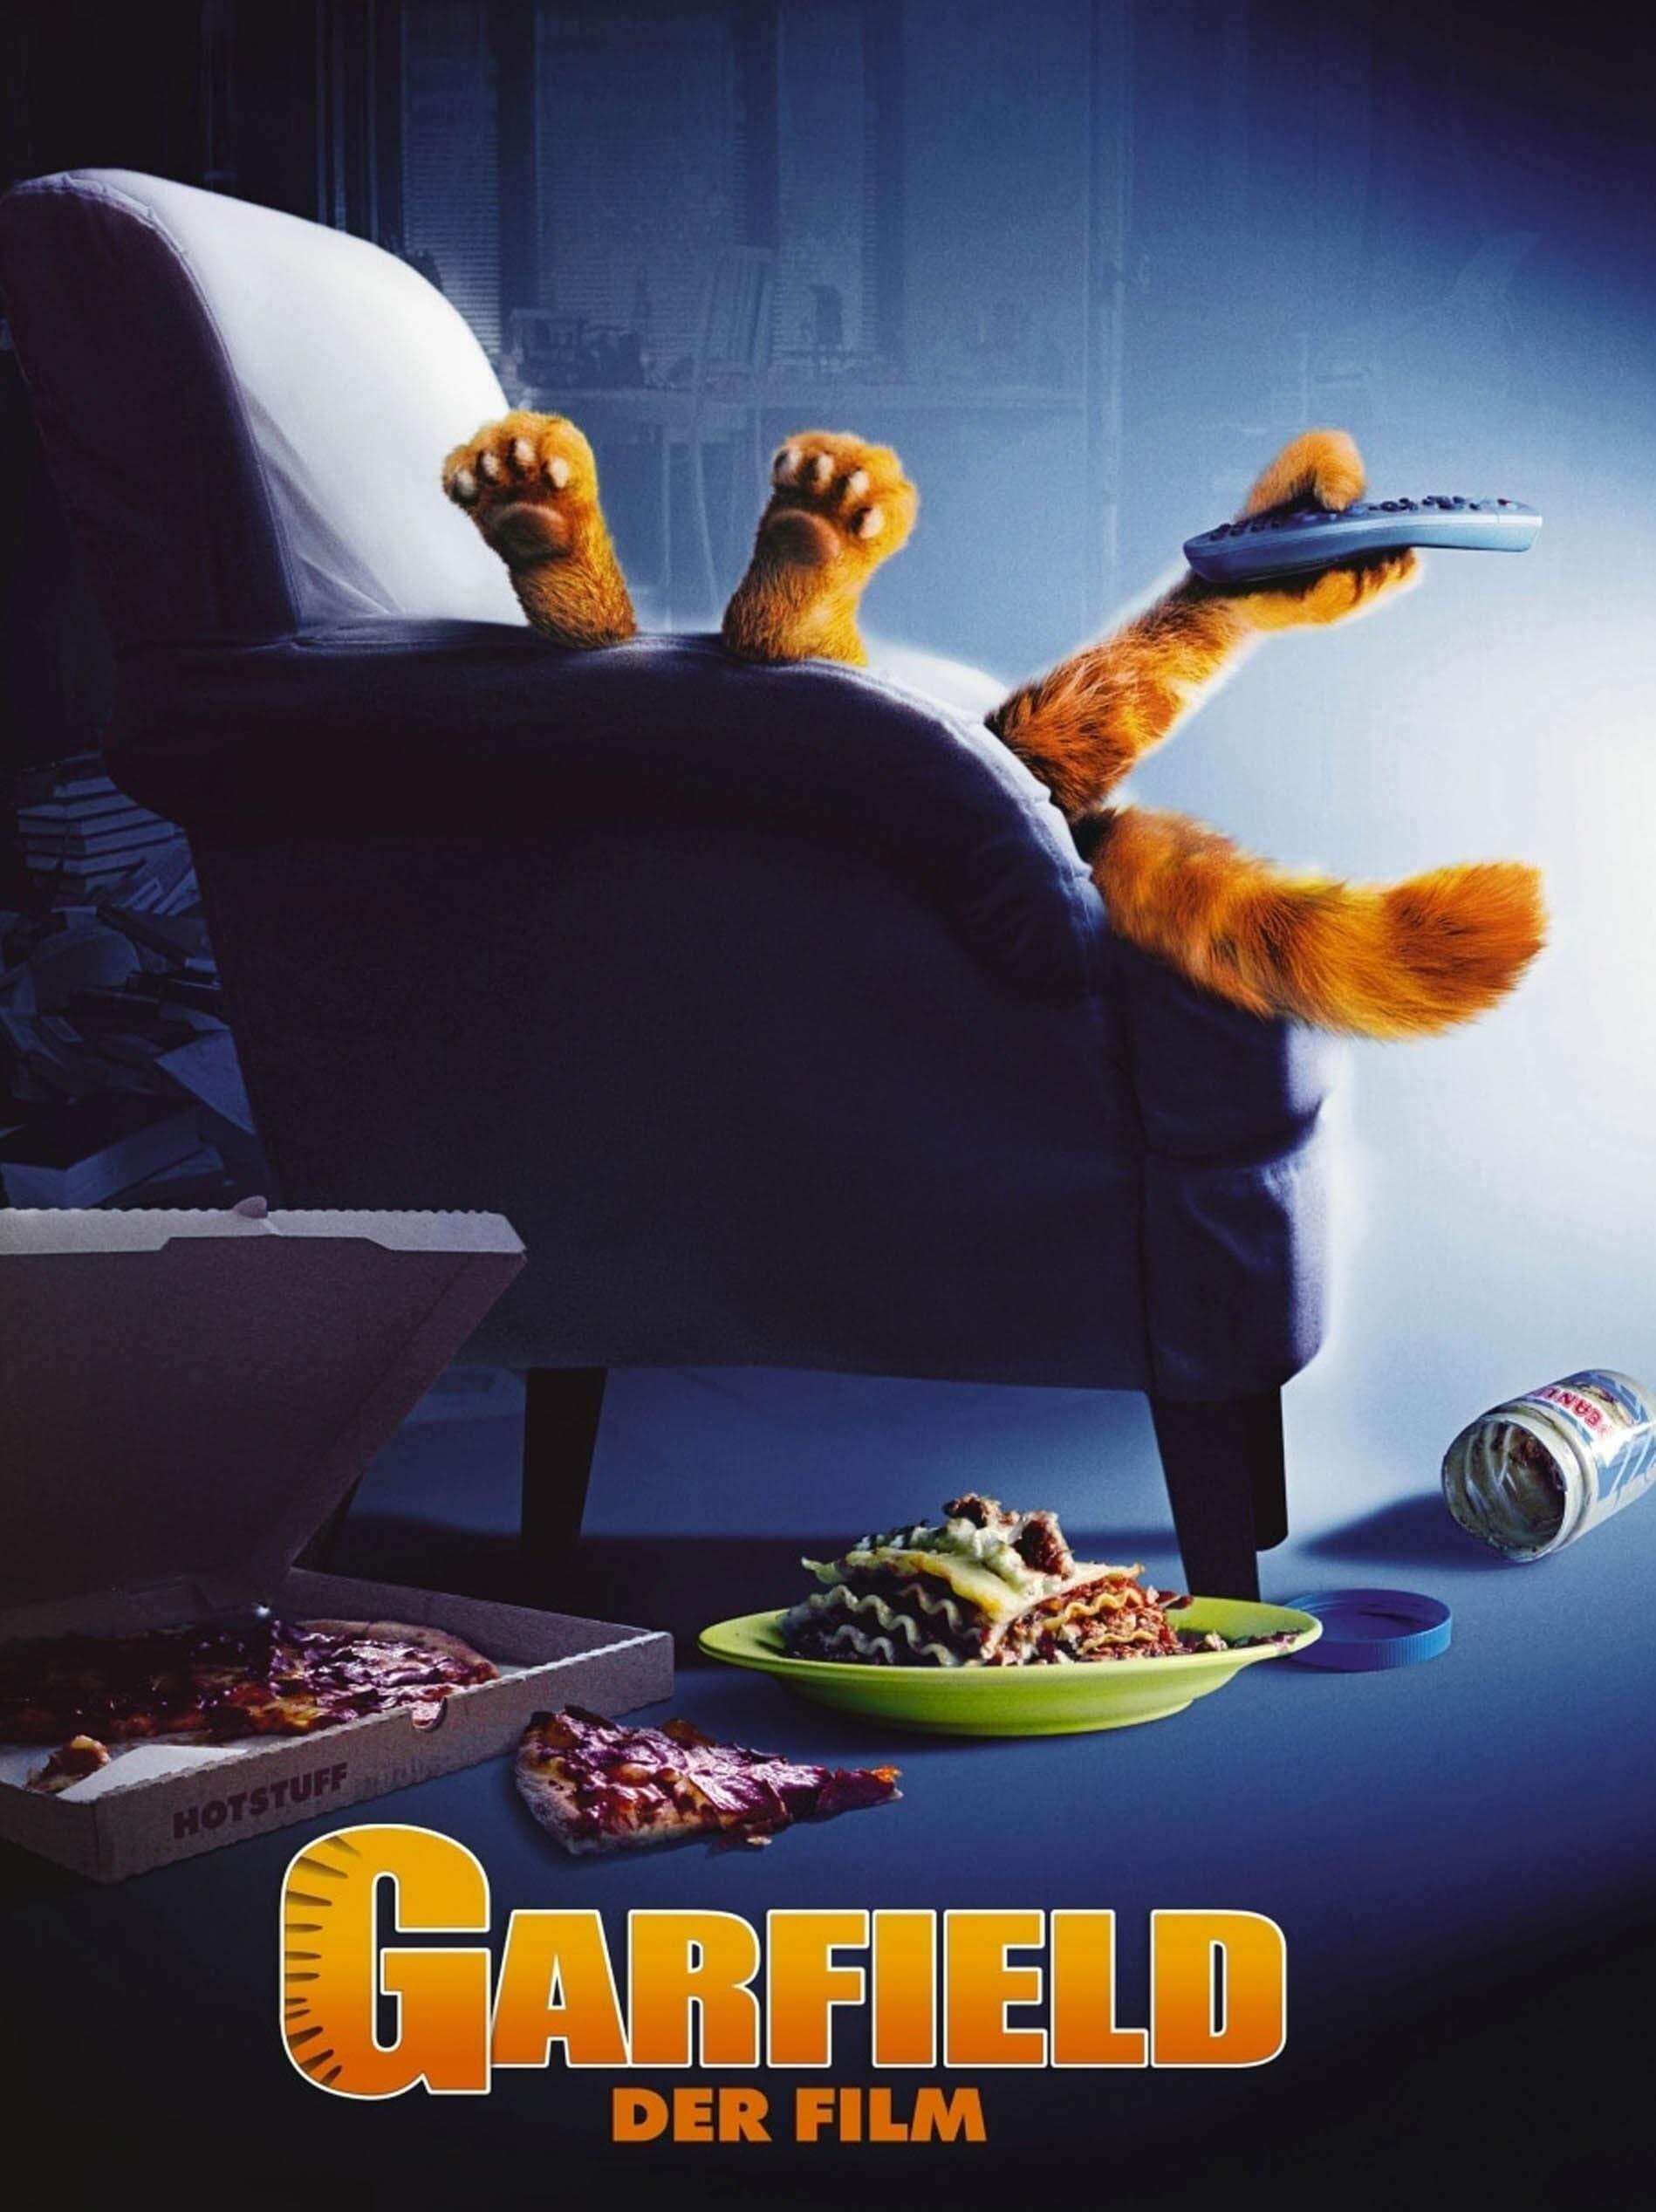 Garfield - Der Film poster